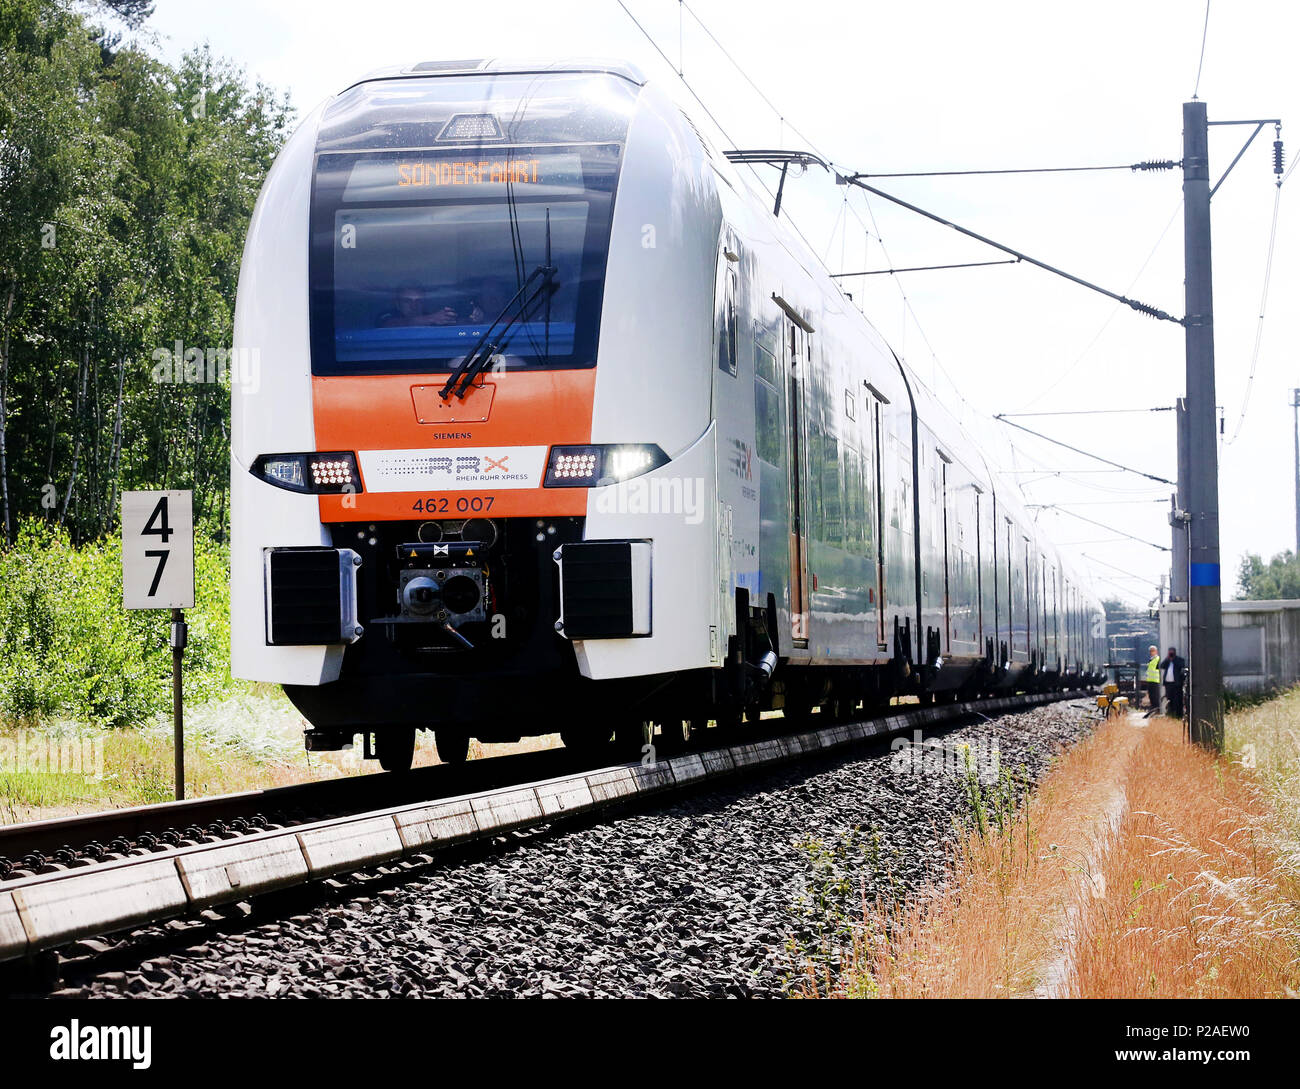 14 Juni 2018, Wegberg, Deutschland: Der Neue Rhein-ruhr-Express (Rrx) auf  der Siemens test track Laufwerke in Wegberg auf den Gleisen. Der Zug  Hersteller Siemens abgeschlossen hat die Prüfung der neuen Rhein-ruhr-Express  (Rrx)